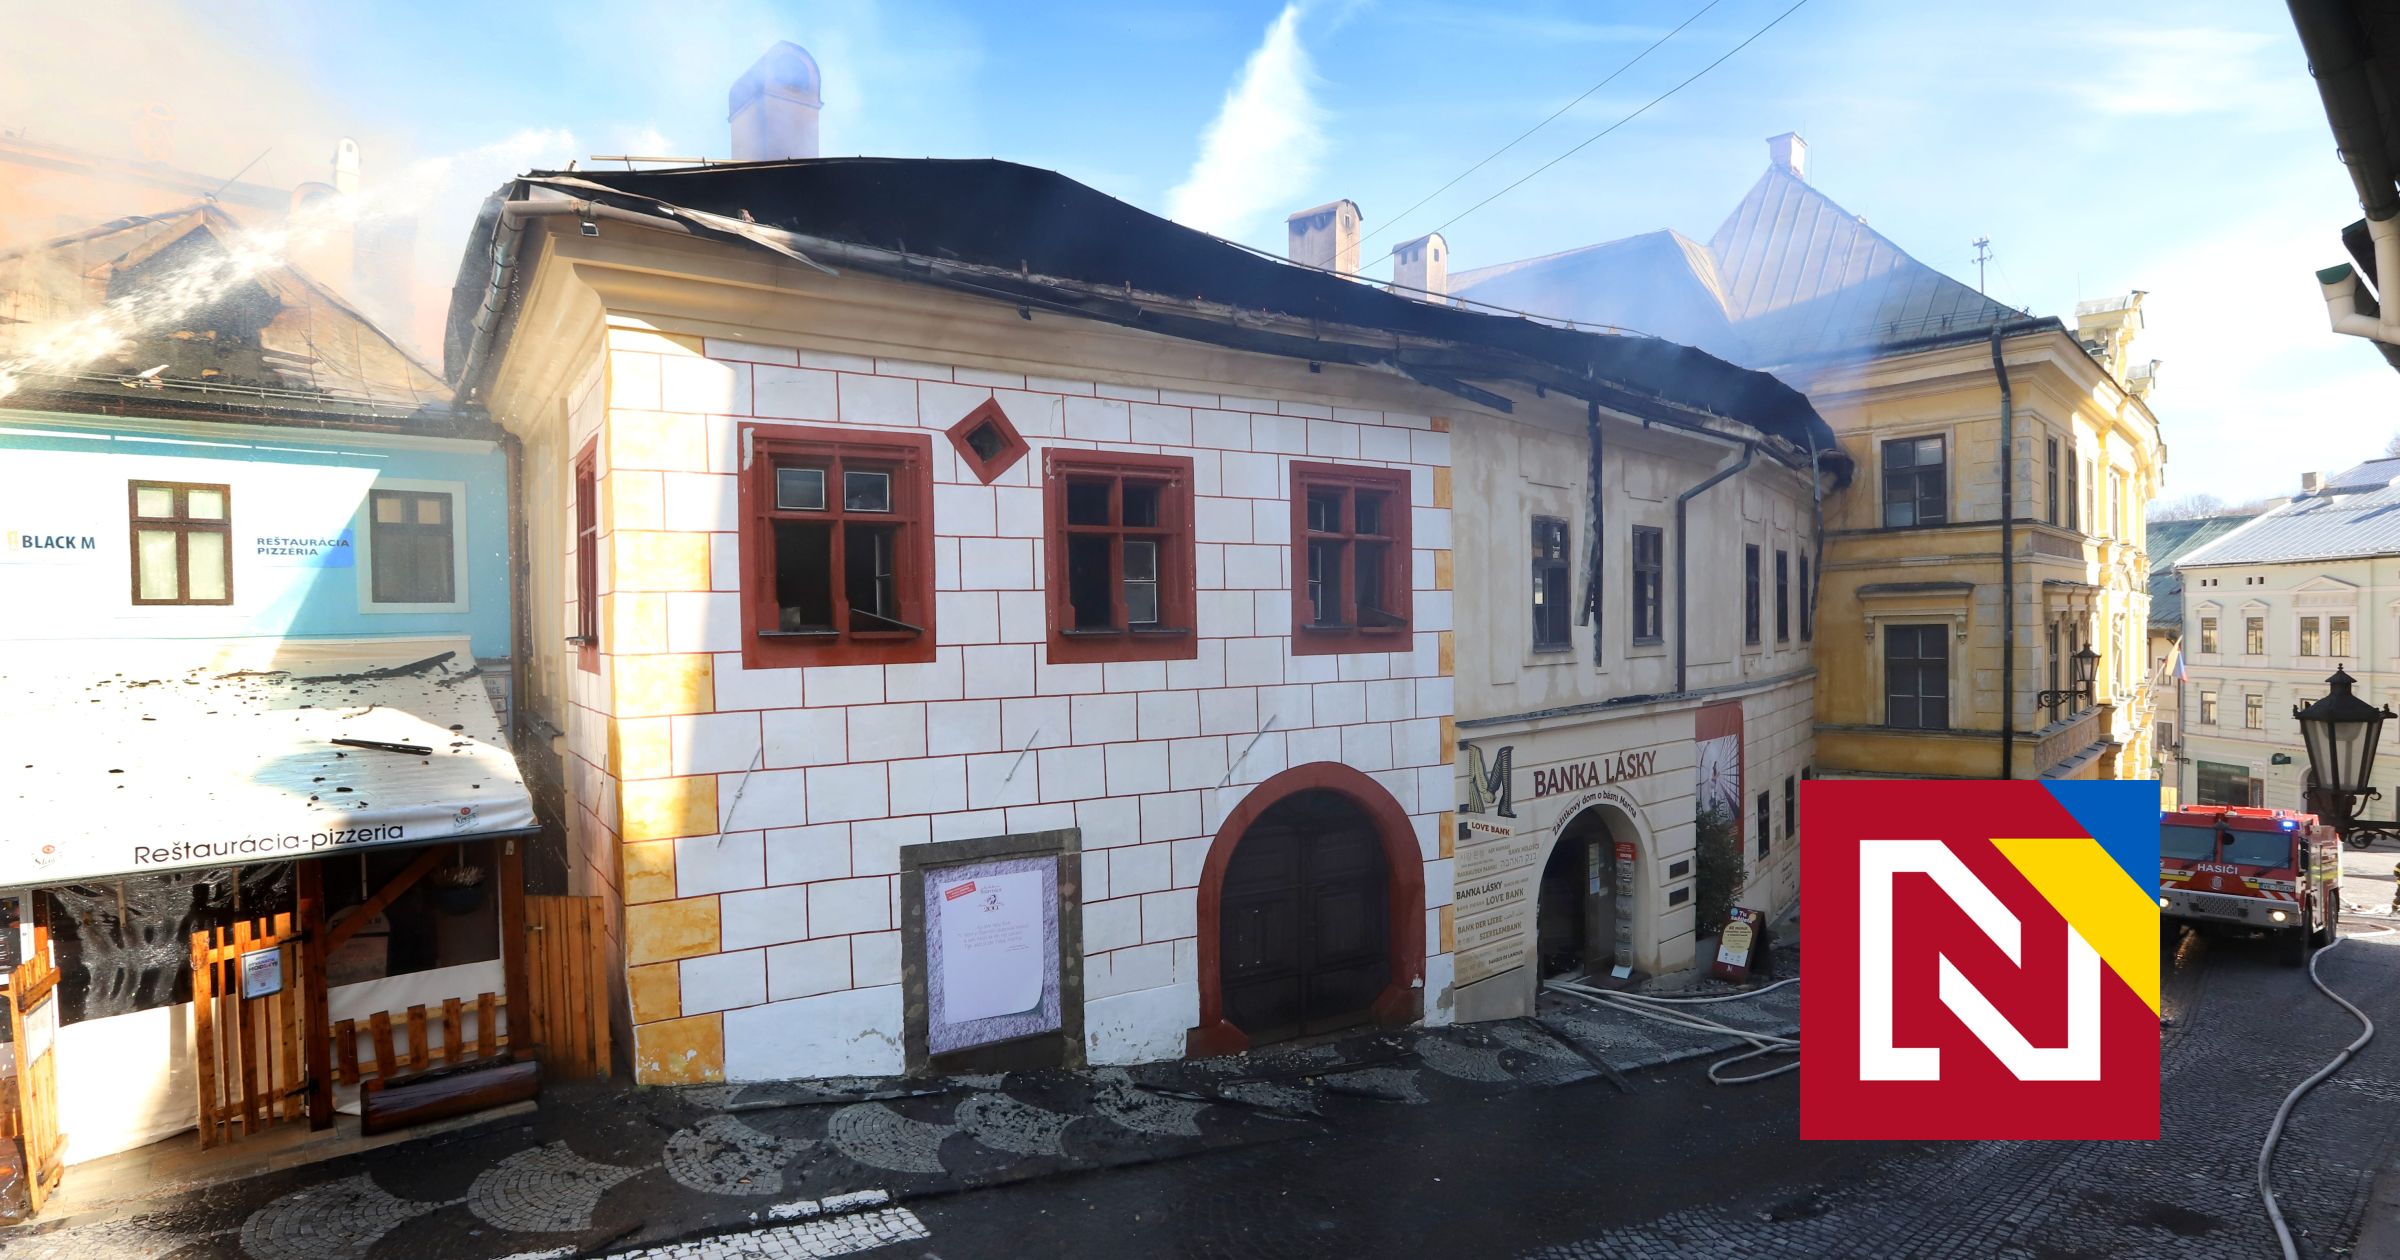 Dom Maríny Pischlovej nebol pred požiarom len Bankou lásky, ale aj učebnicou architektonických slohov